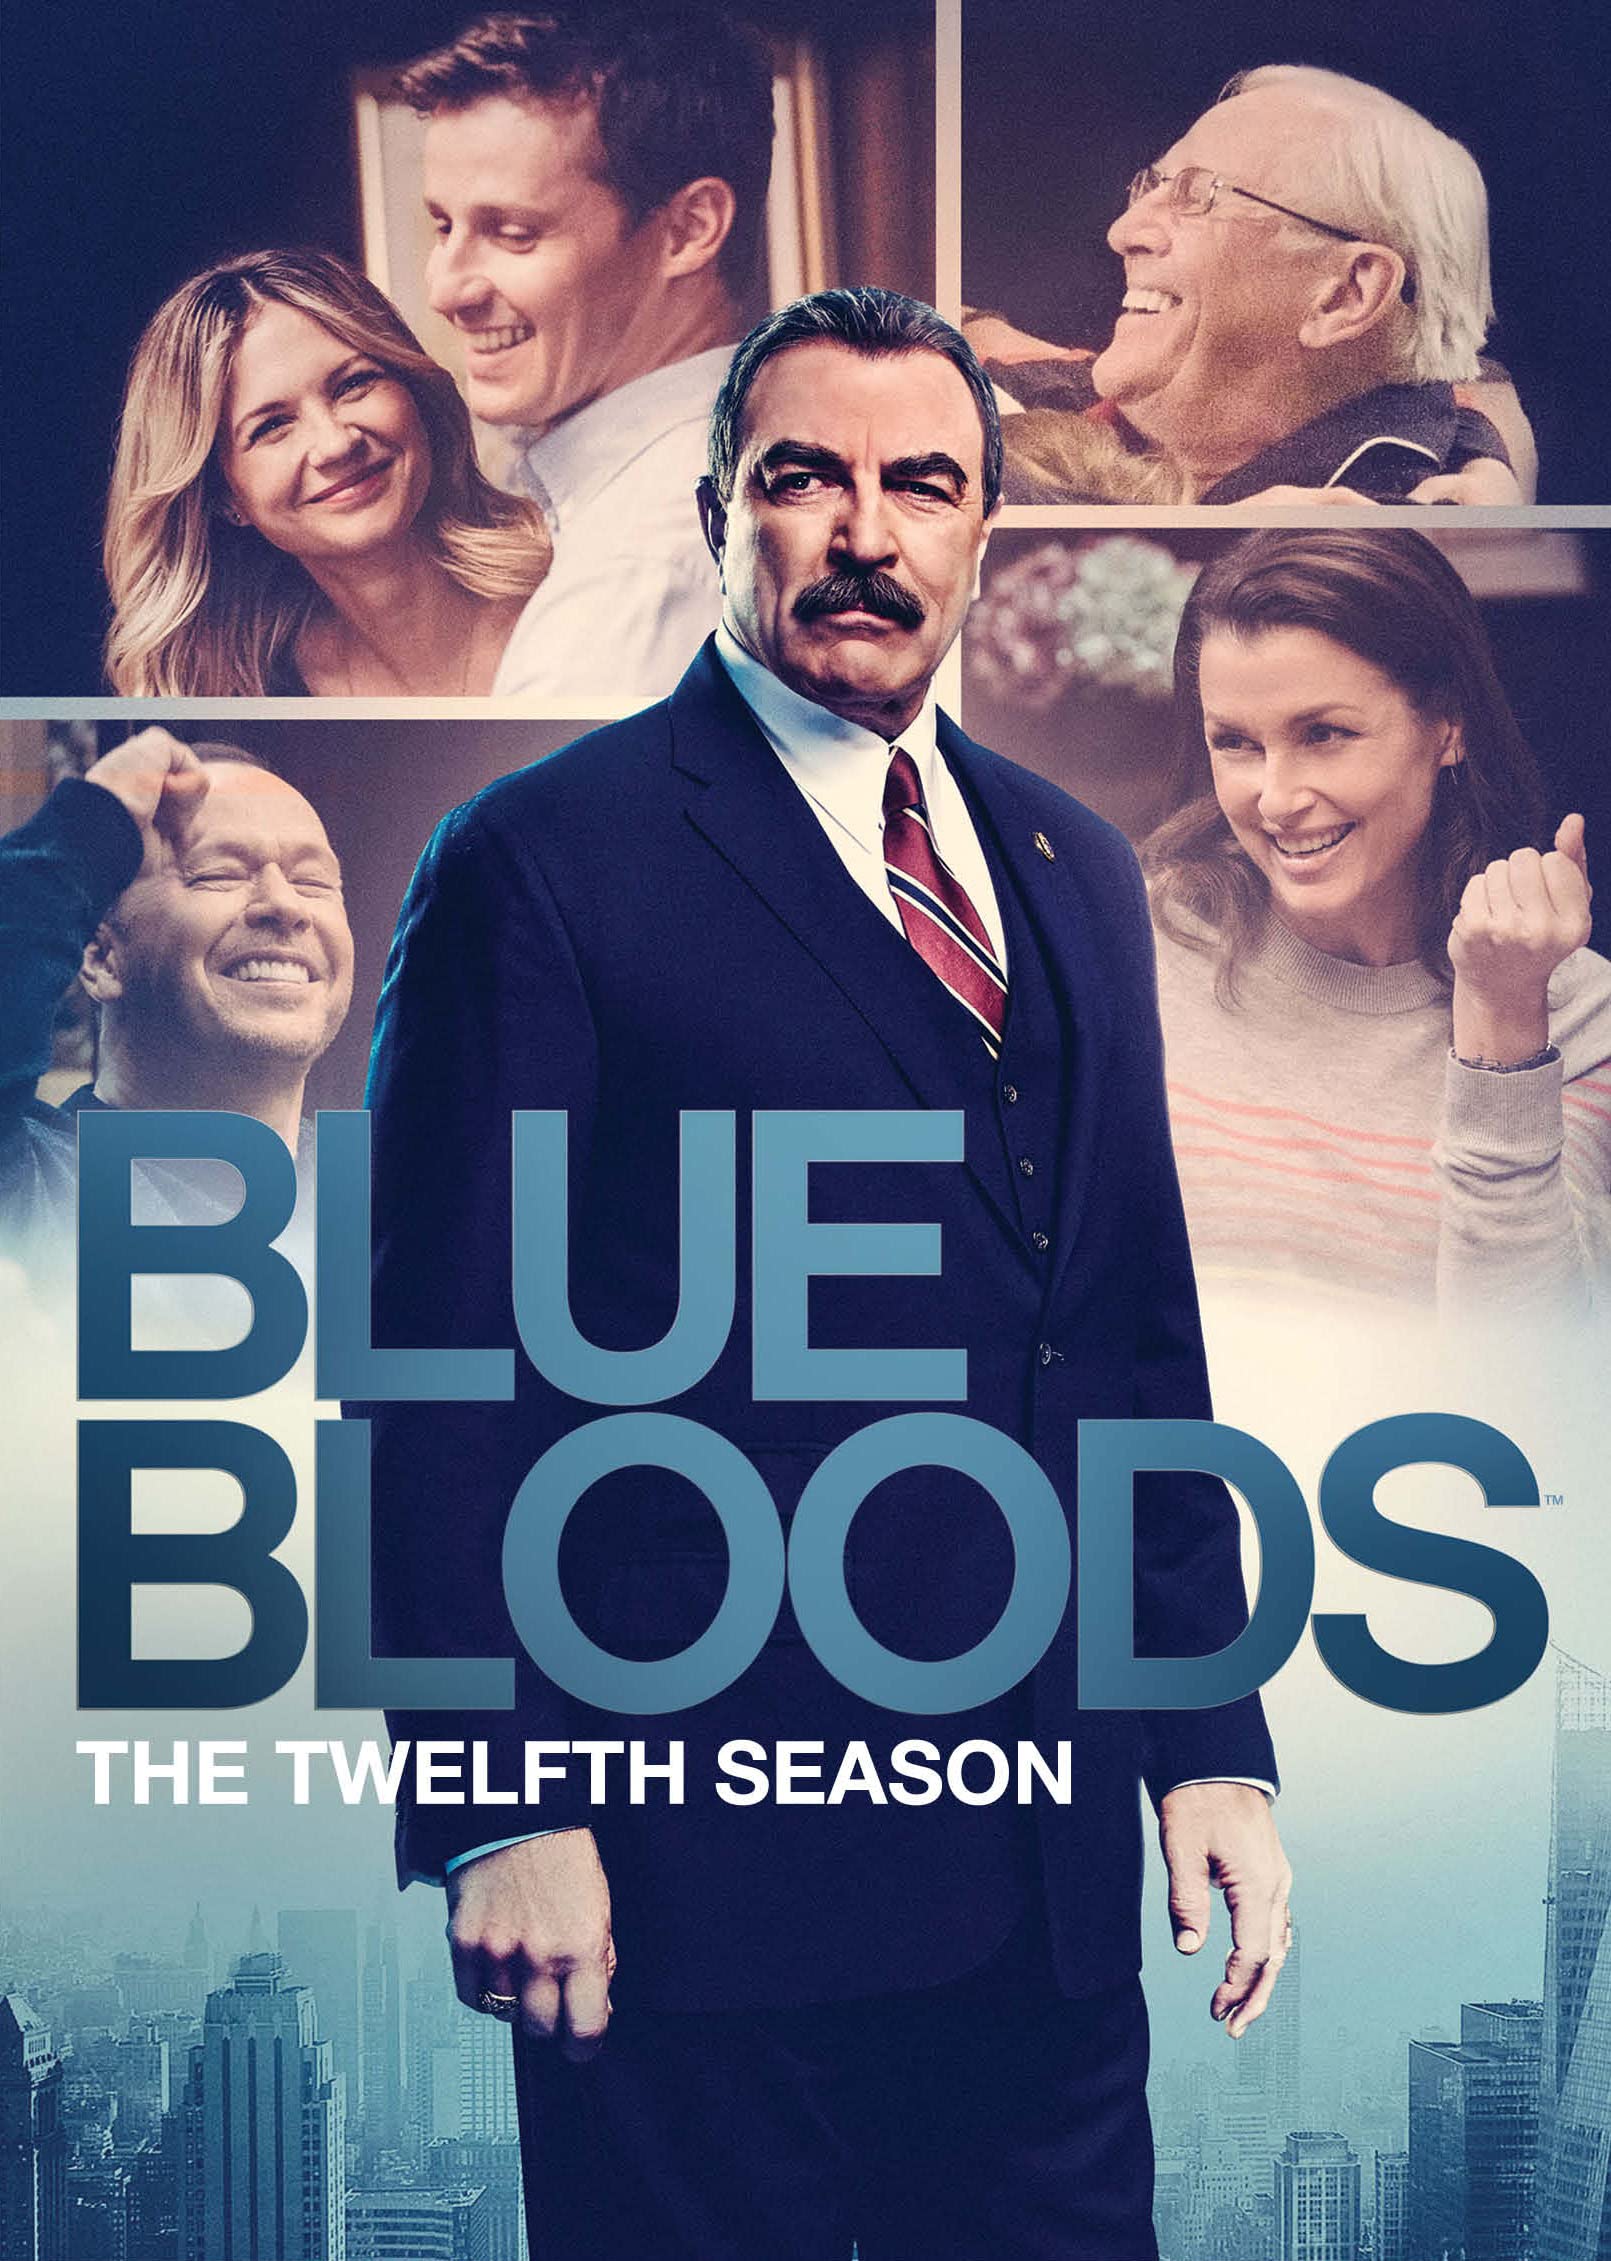 Blue Bloods DVD Release Date